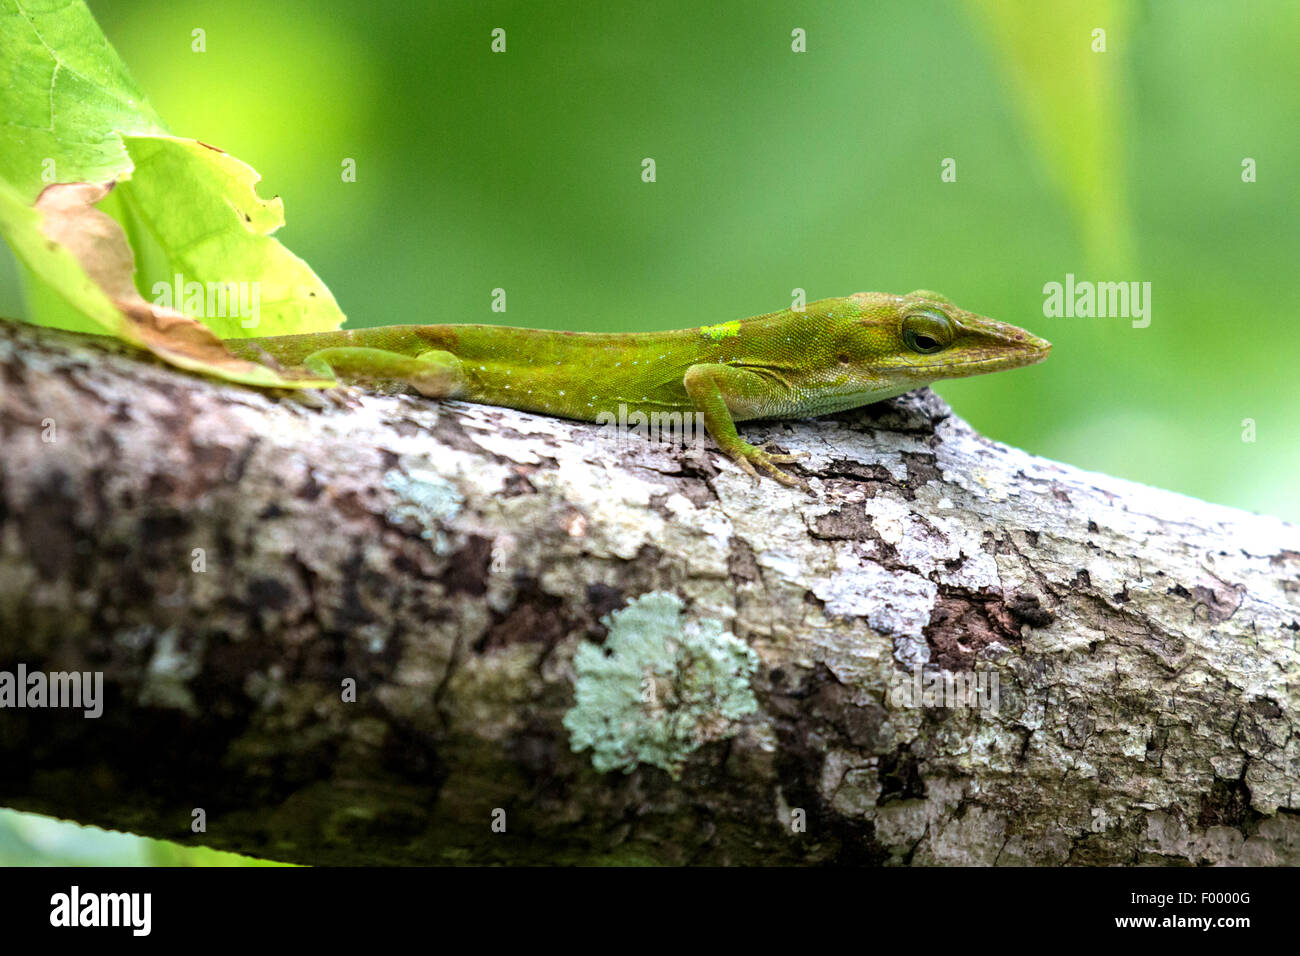 grüne Anole (Anolis Carolinensis), Veränderung der Farbe von grün bis braun, sitzt auf einem Zweig, USA, Florida Stockfoto